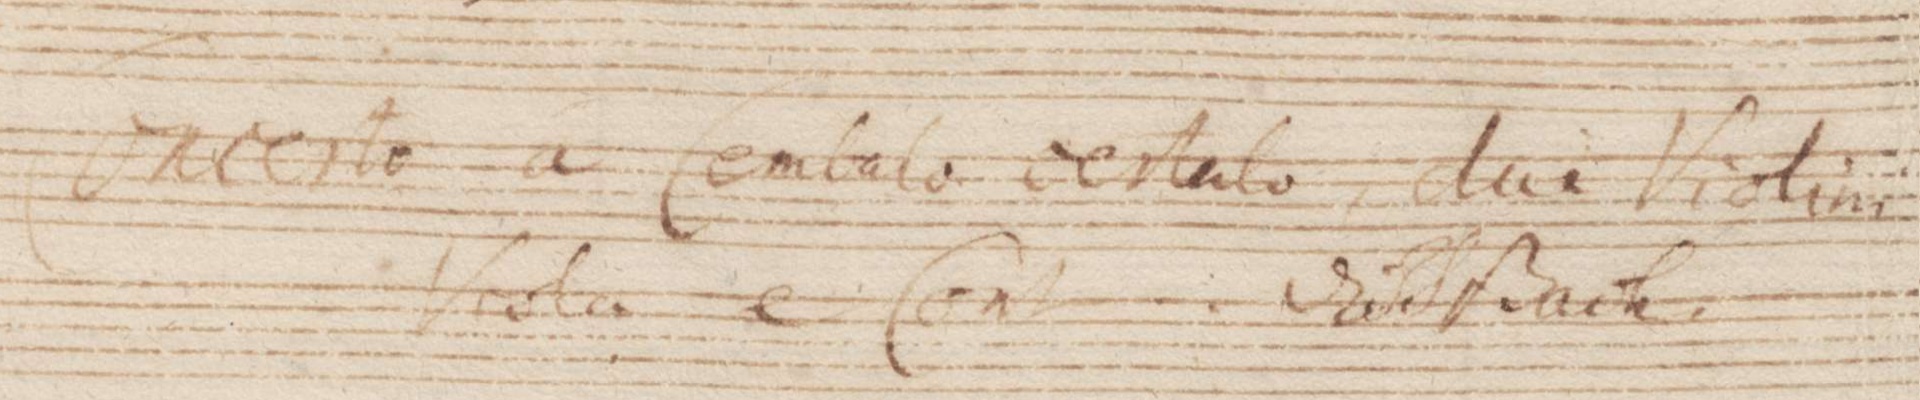 Titre sur la page 24 de l'autographe de 1738